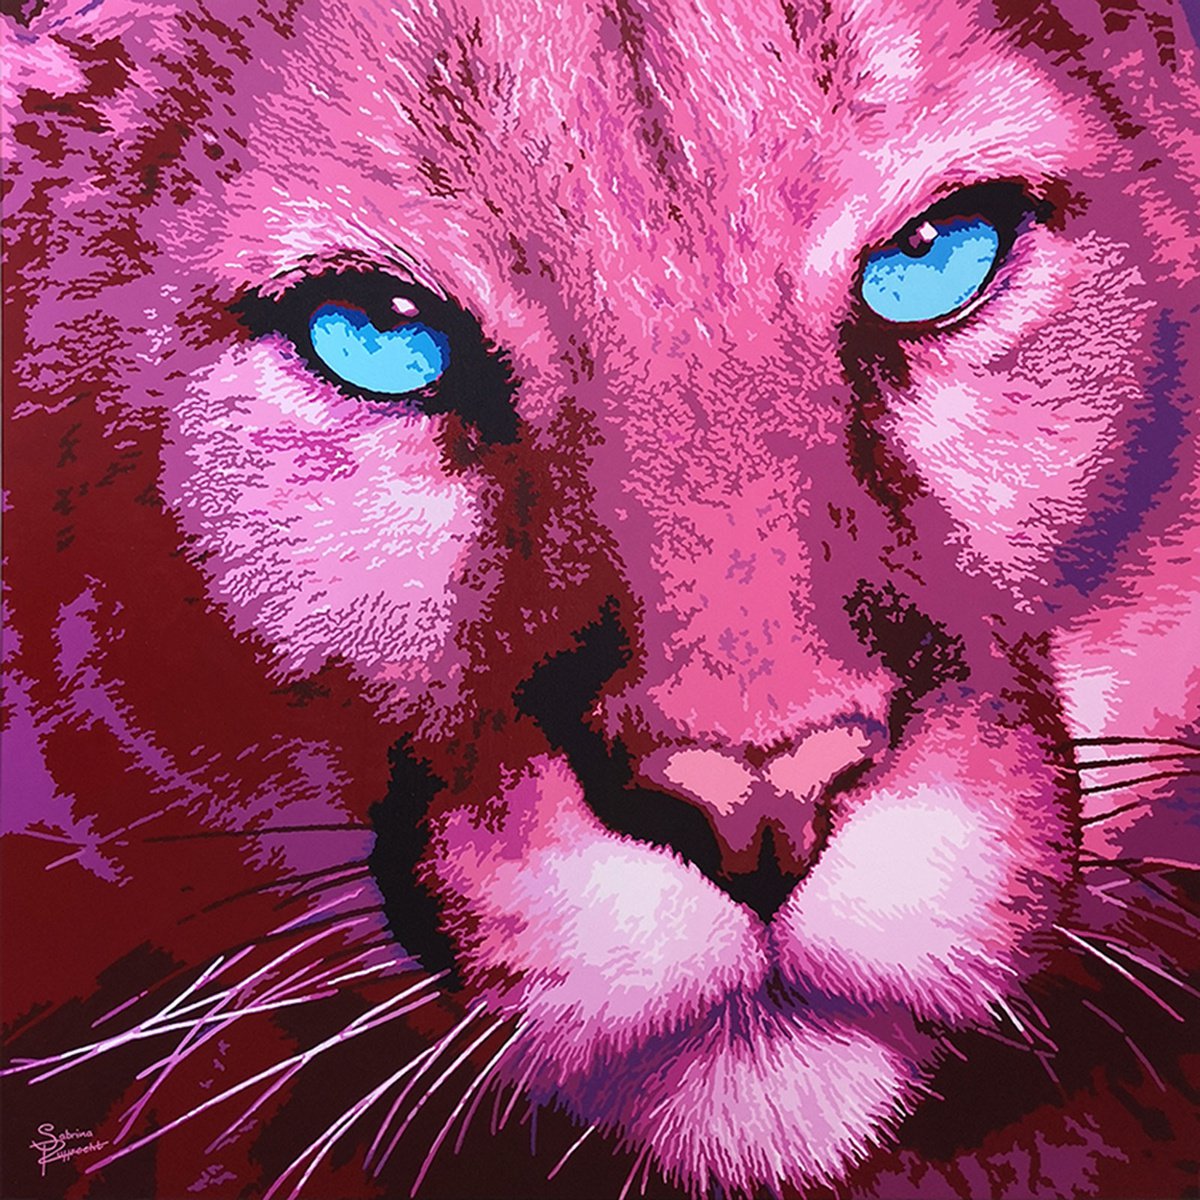 Pink Panther by Sabrina Rupprecht